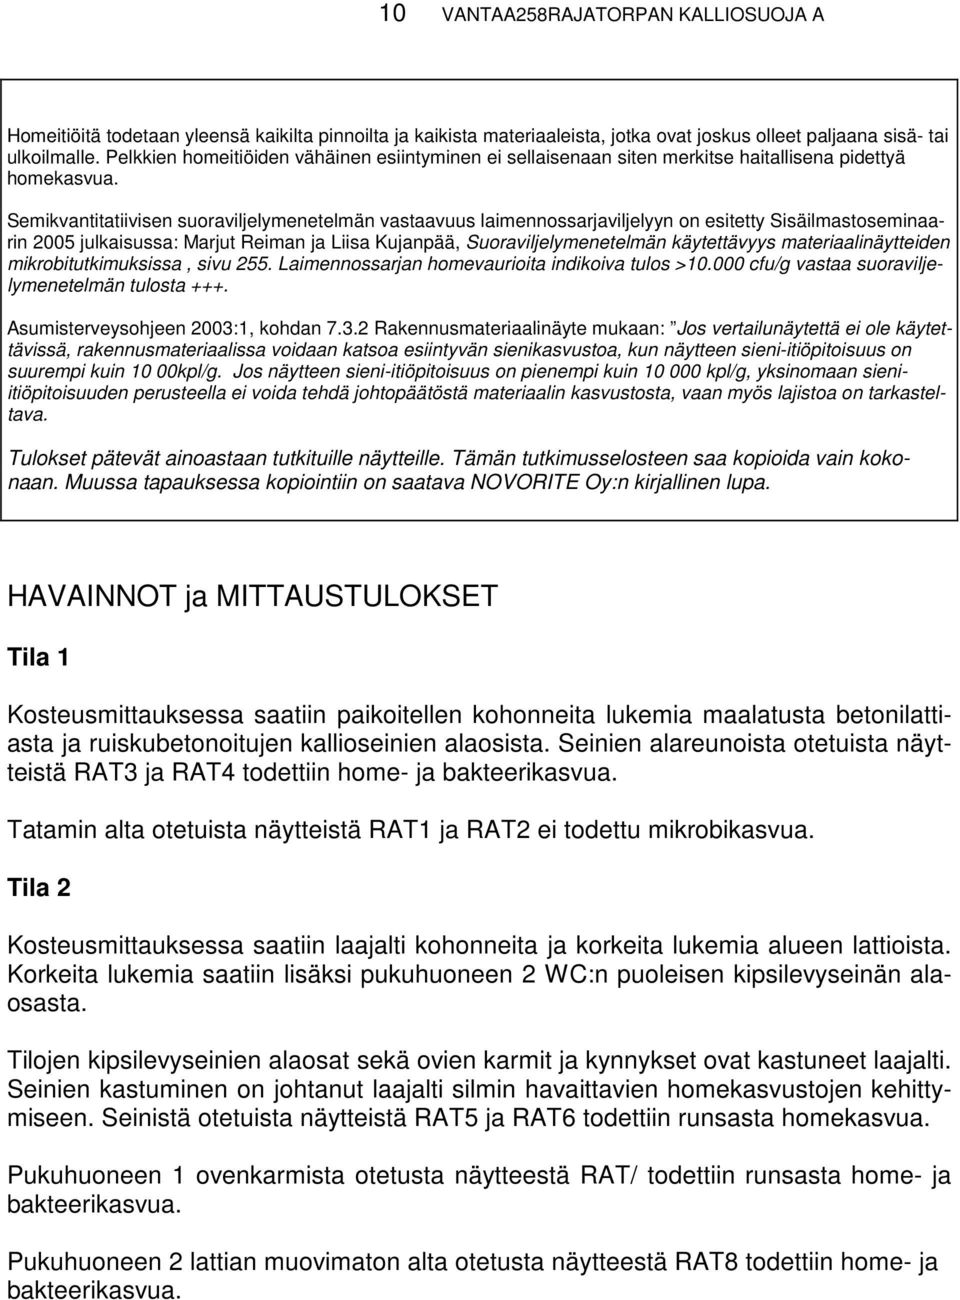 Semikvantitatiivisen suoraviljelymenetelmän vastaavuus laimennossarjaviljelyyn on esitetty Sisäilmastoseminaarin 2005 julkaisussa: Marjut Reiman ja Liisa Kujanpää, Suoraviljelymenetelmän käytettävyys